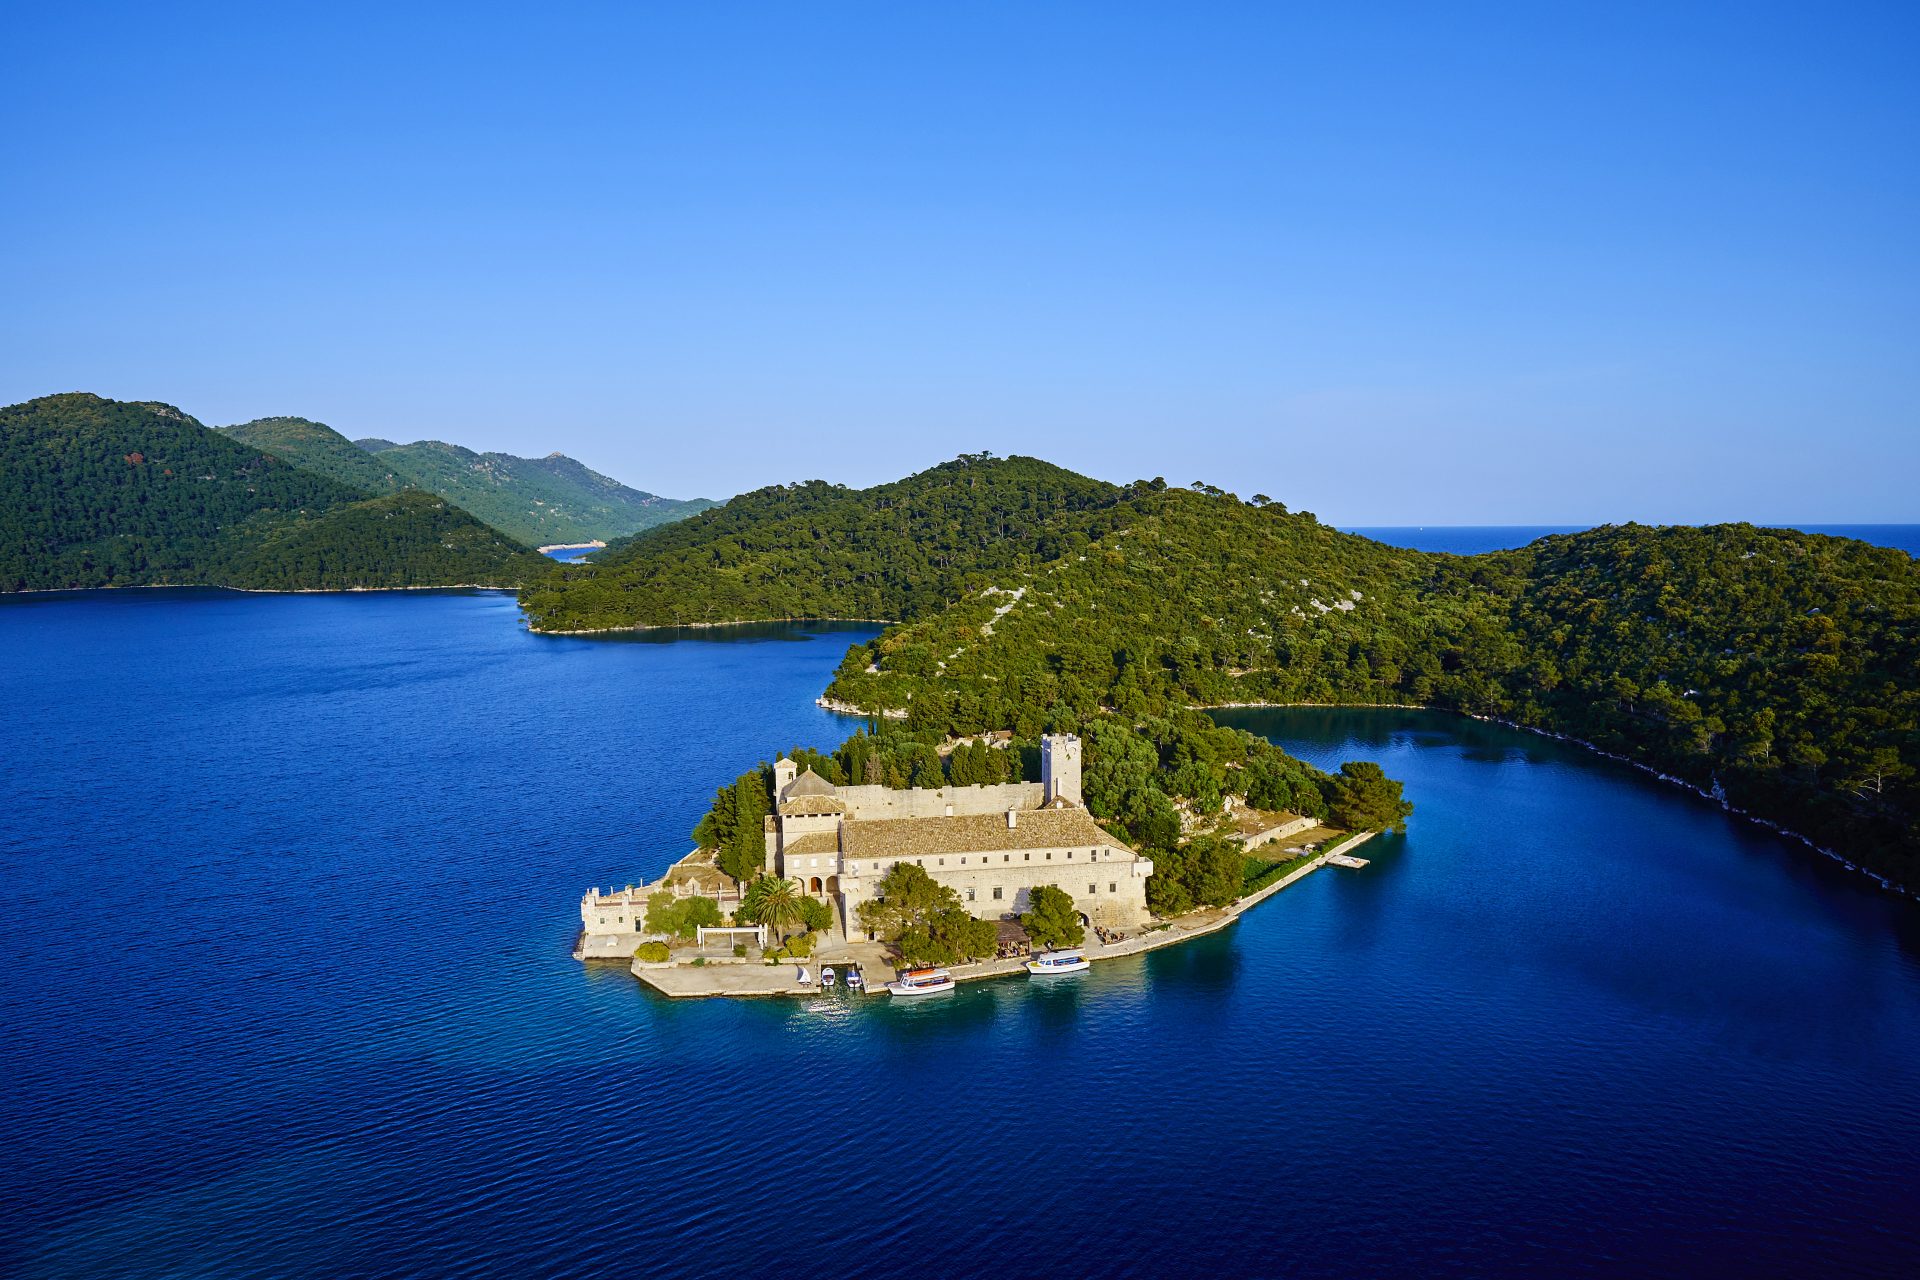 <p><strong>Où ?<br> </strong>Dans la Mer Adriatique, au large de Dubrovnik.</p> <p><strong>Comment s'y rendre ?<br> </strong>En bateau depuis Dubrovnik.</p> <p><strong>Que faire sur cette île ?<br> </strong>Explorer son parc national, ses lacs et ses plages, visiter le village d'Okuklje.</p>